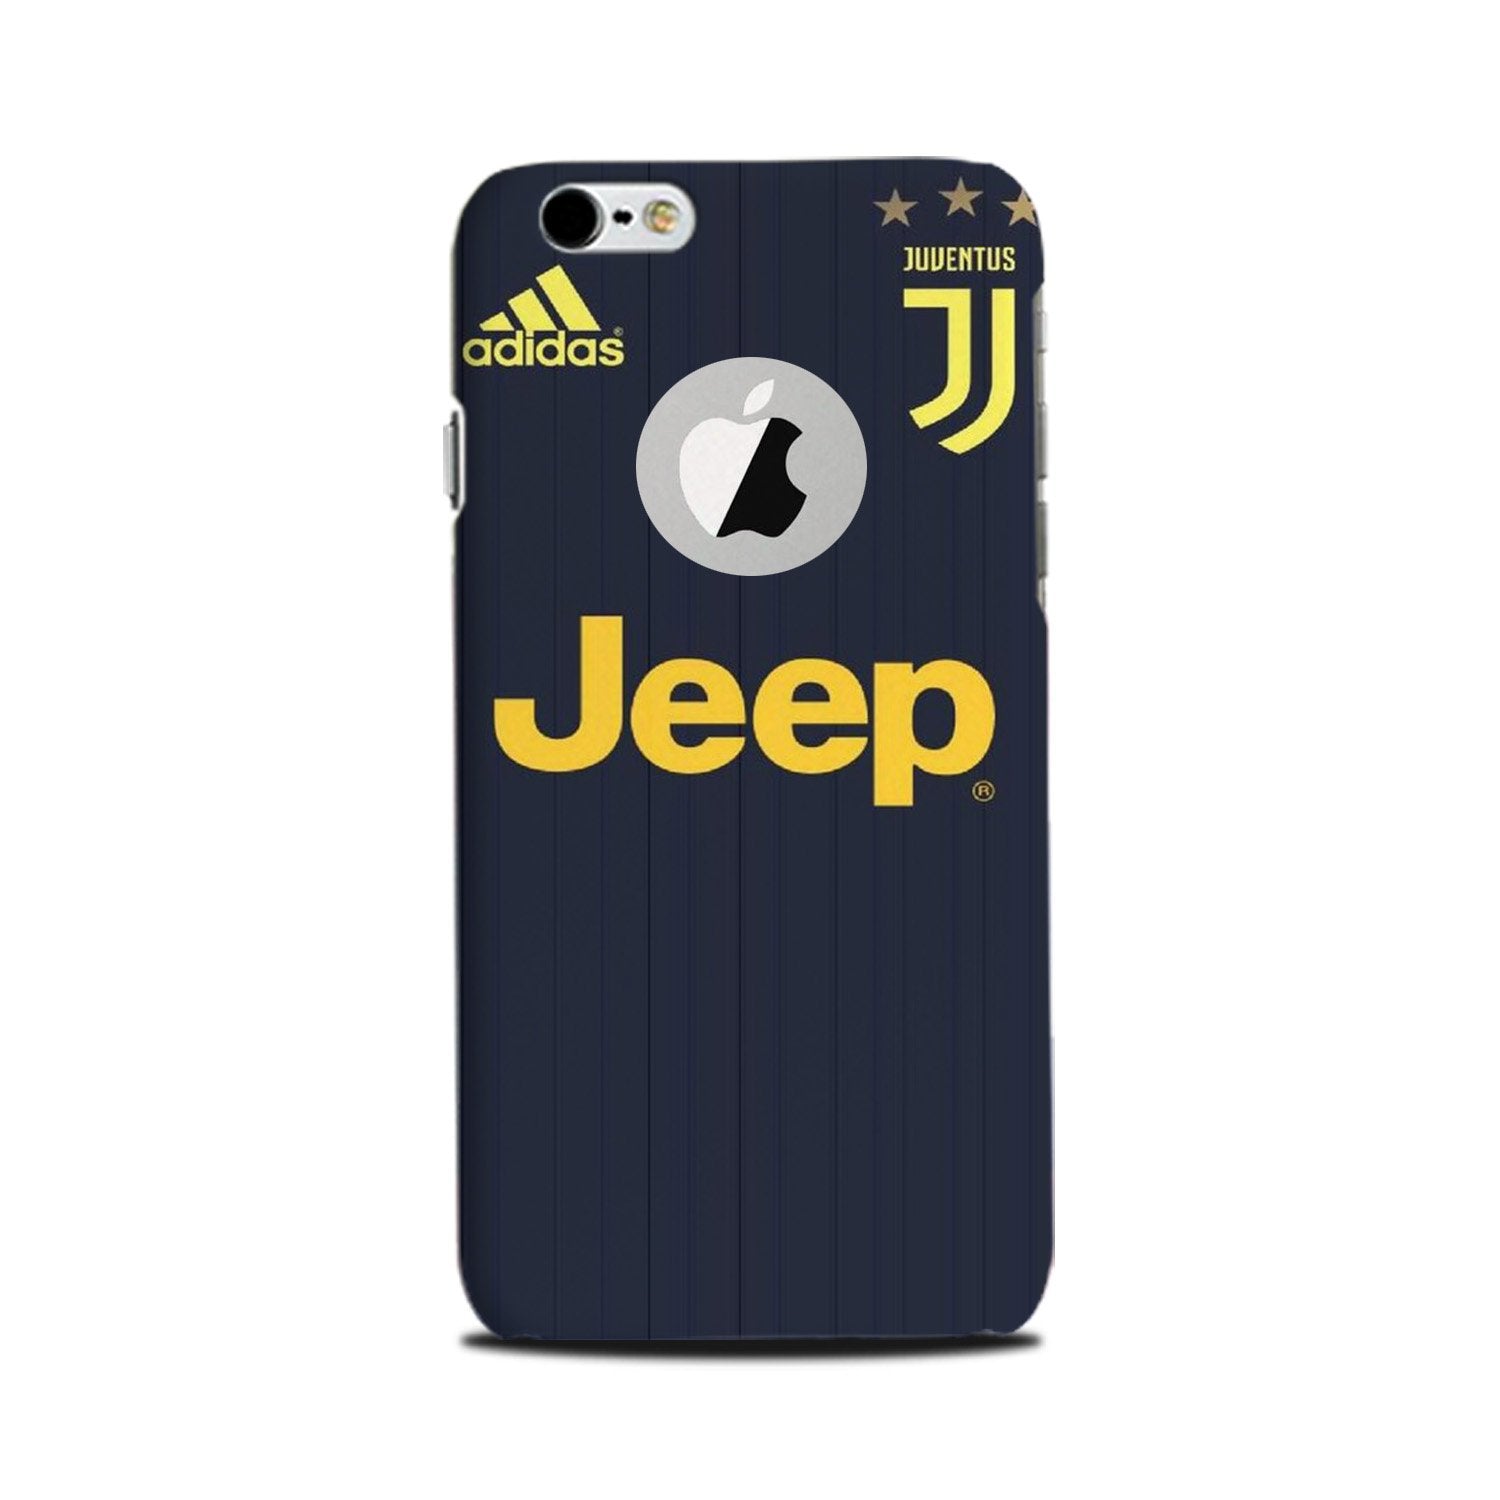 Jeep Juventus Case for iPhone 6 Plus / 6s Plus logo cut (Design - 161)